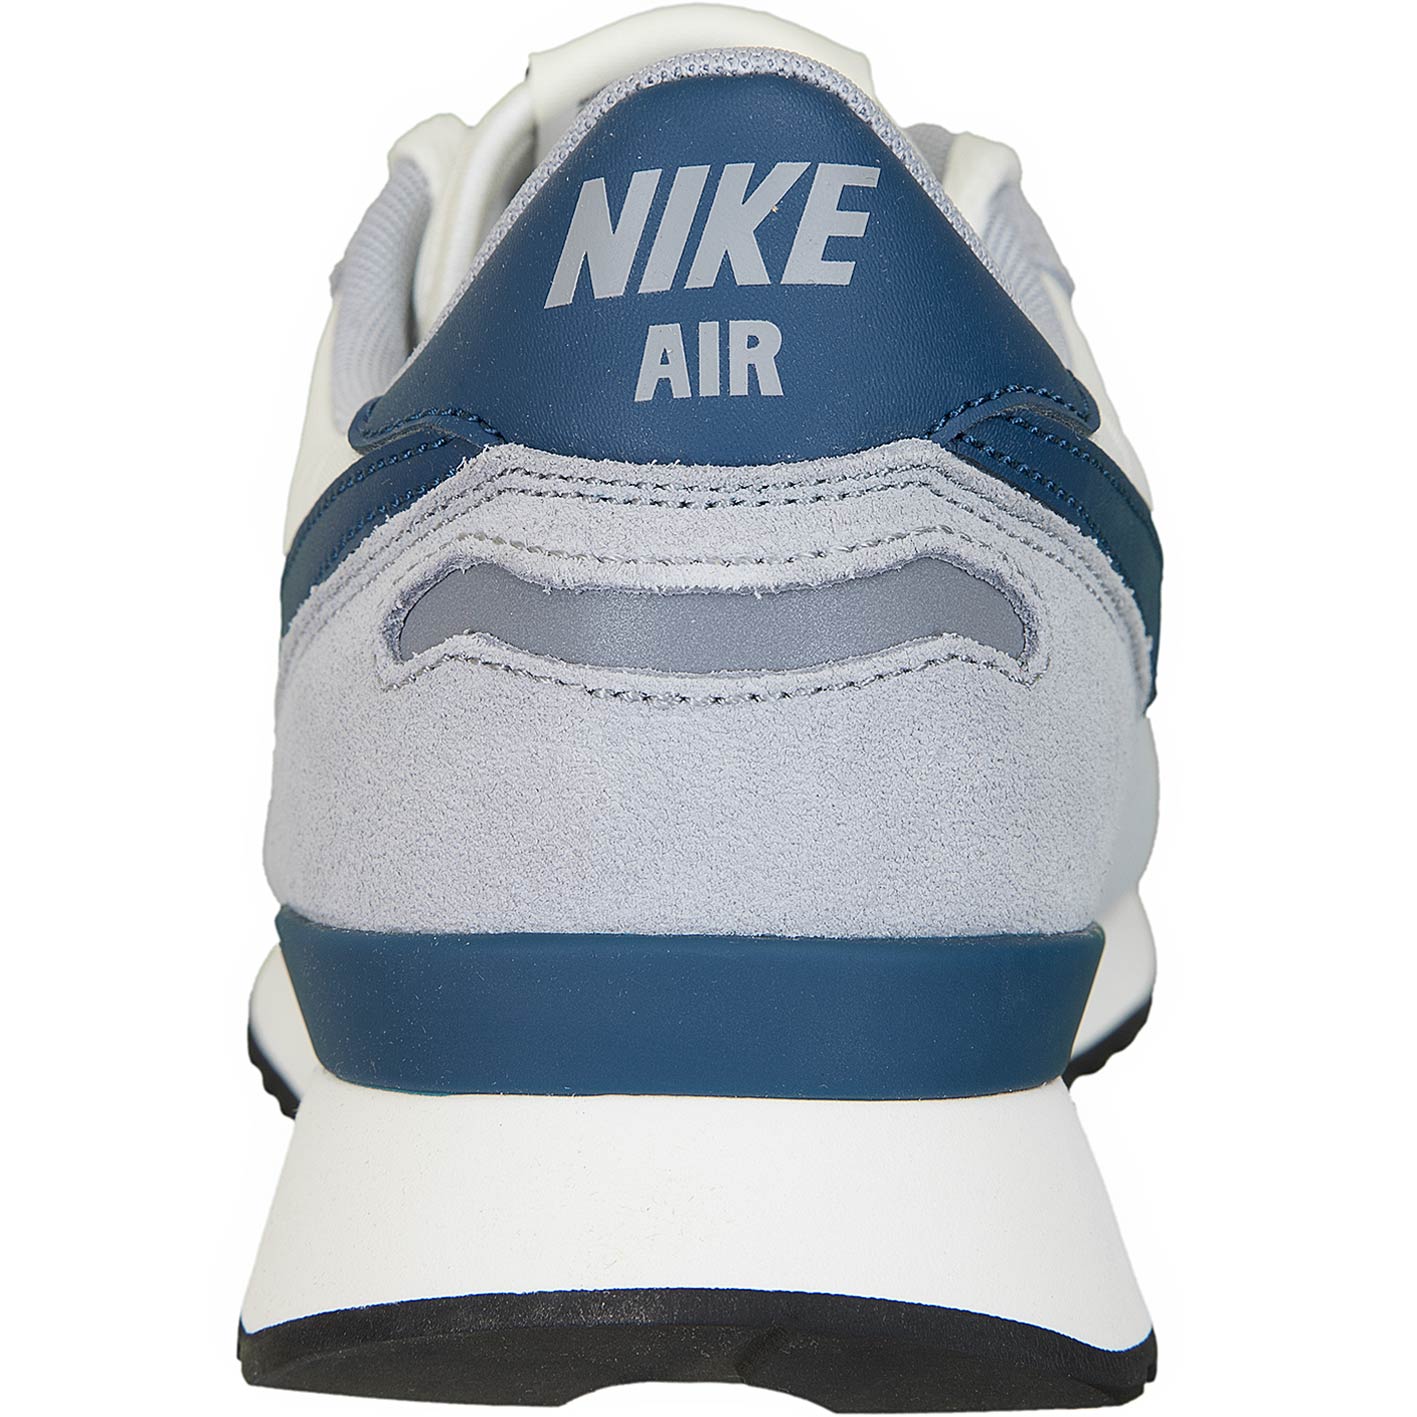 ☆ Nike Sneaker Air Vortex grau/blau - hier bestellen!